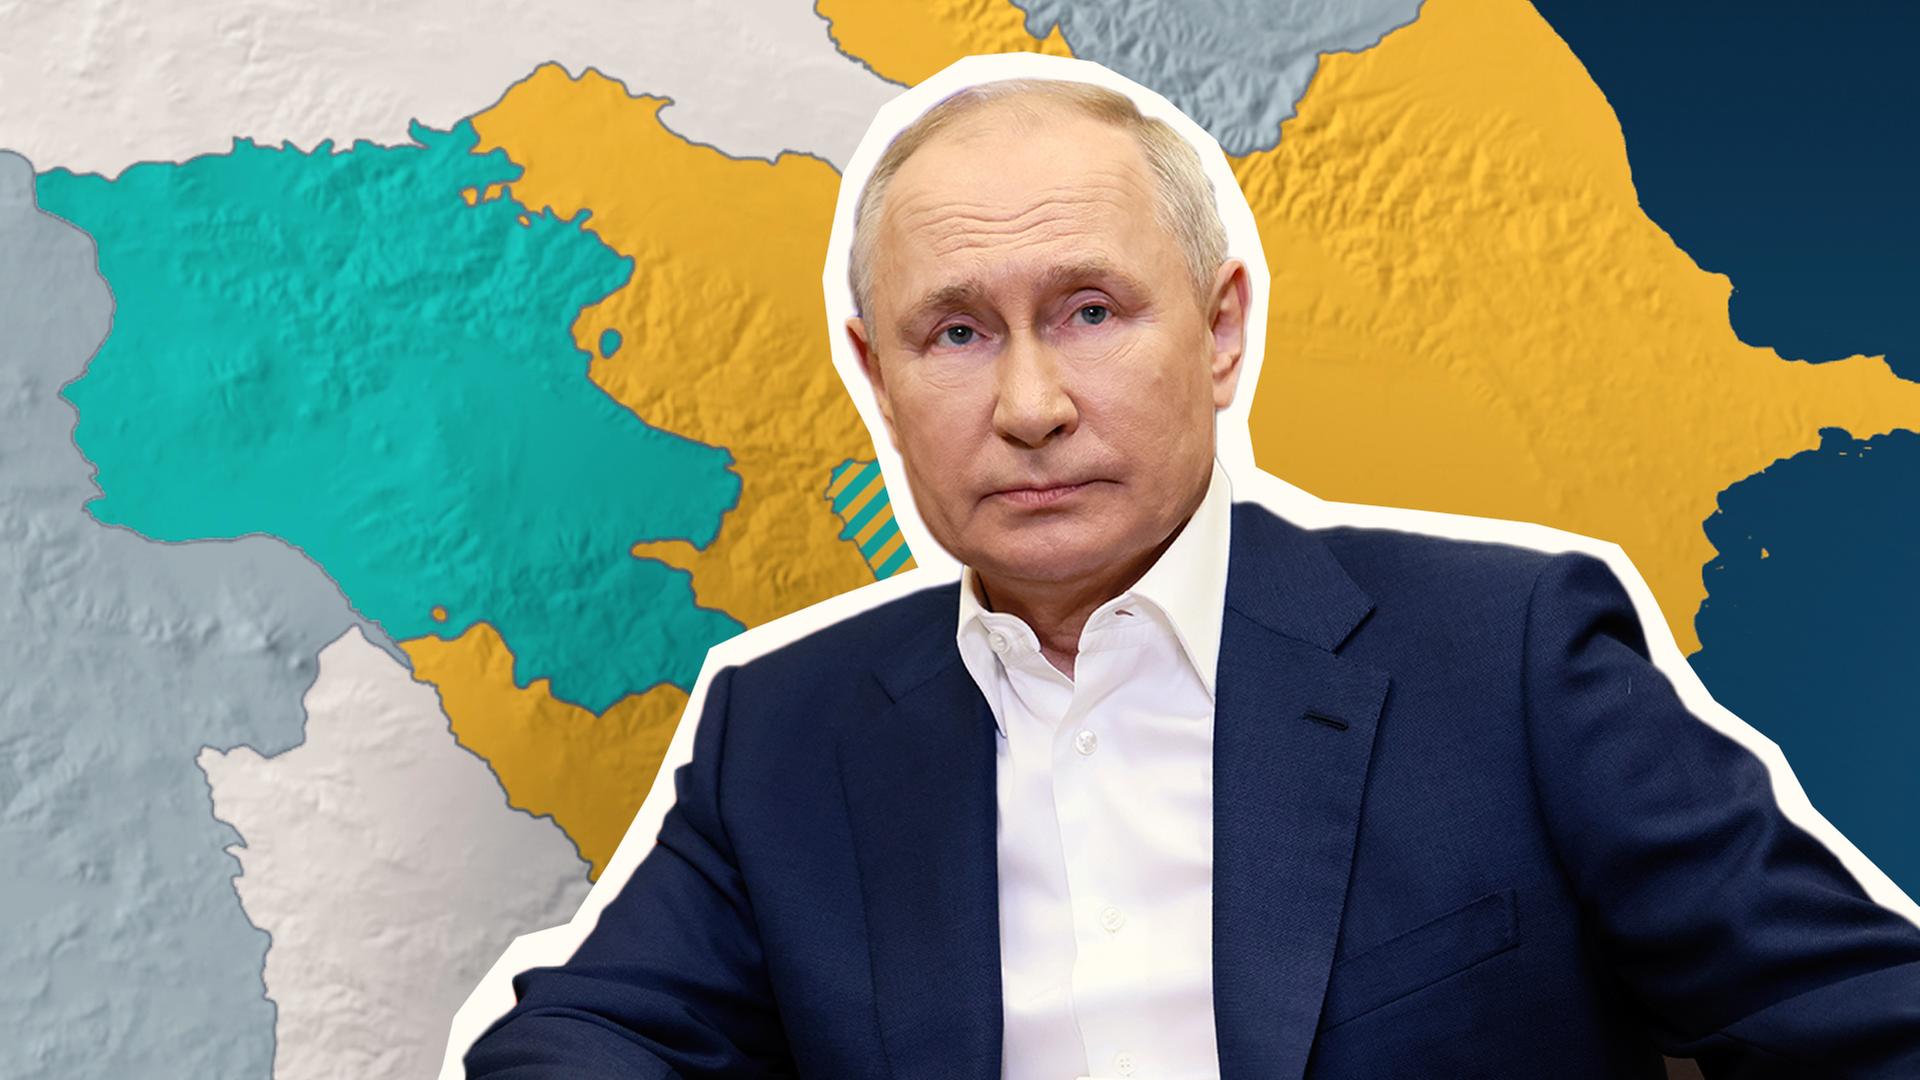 Putin vor Landkarte